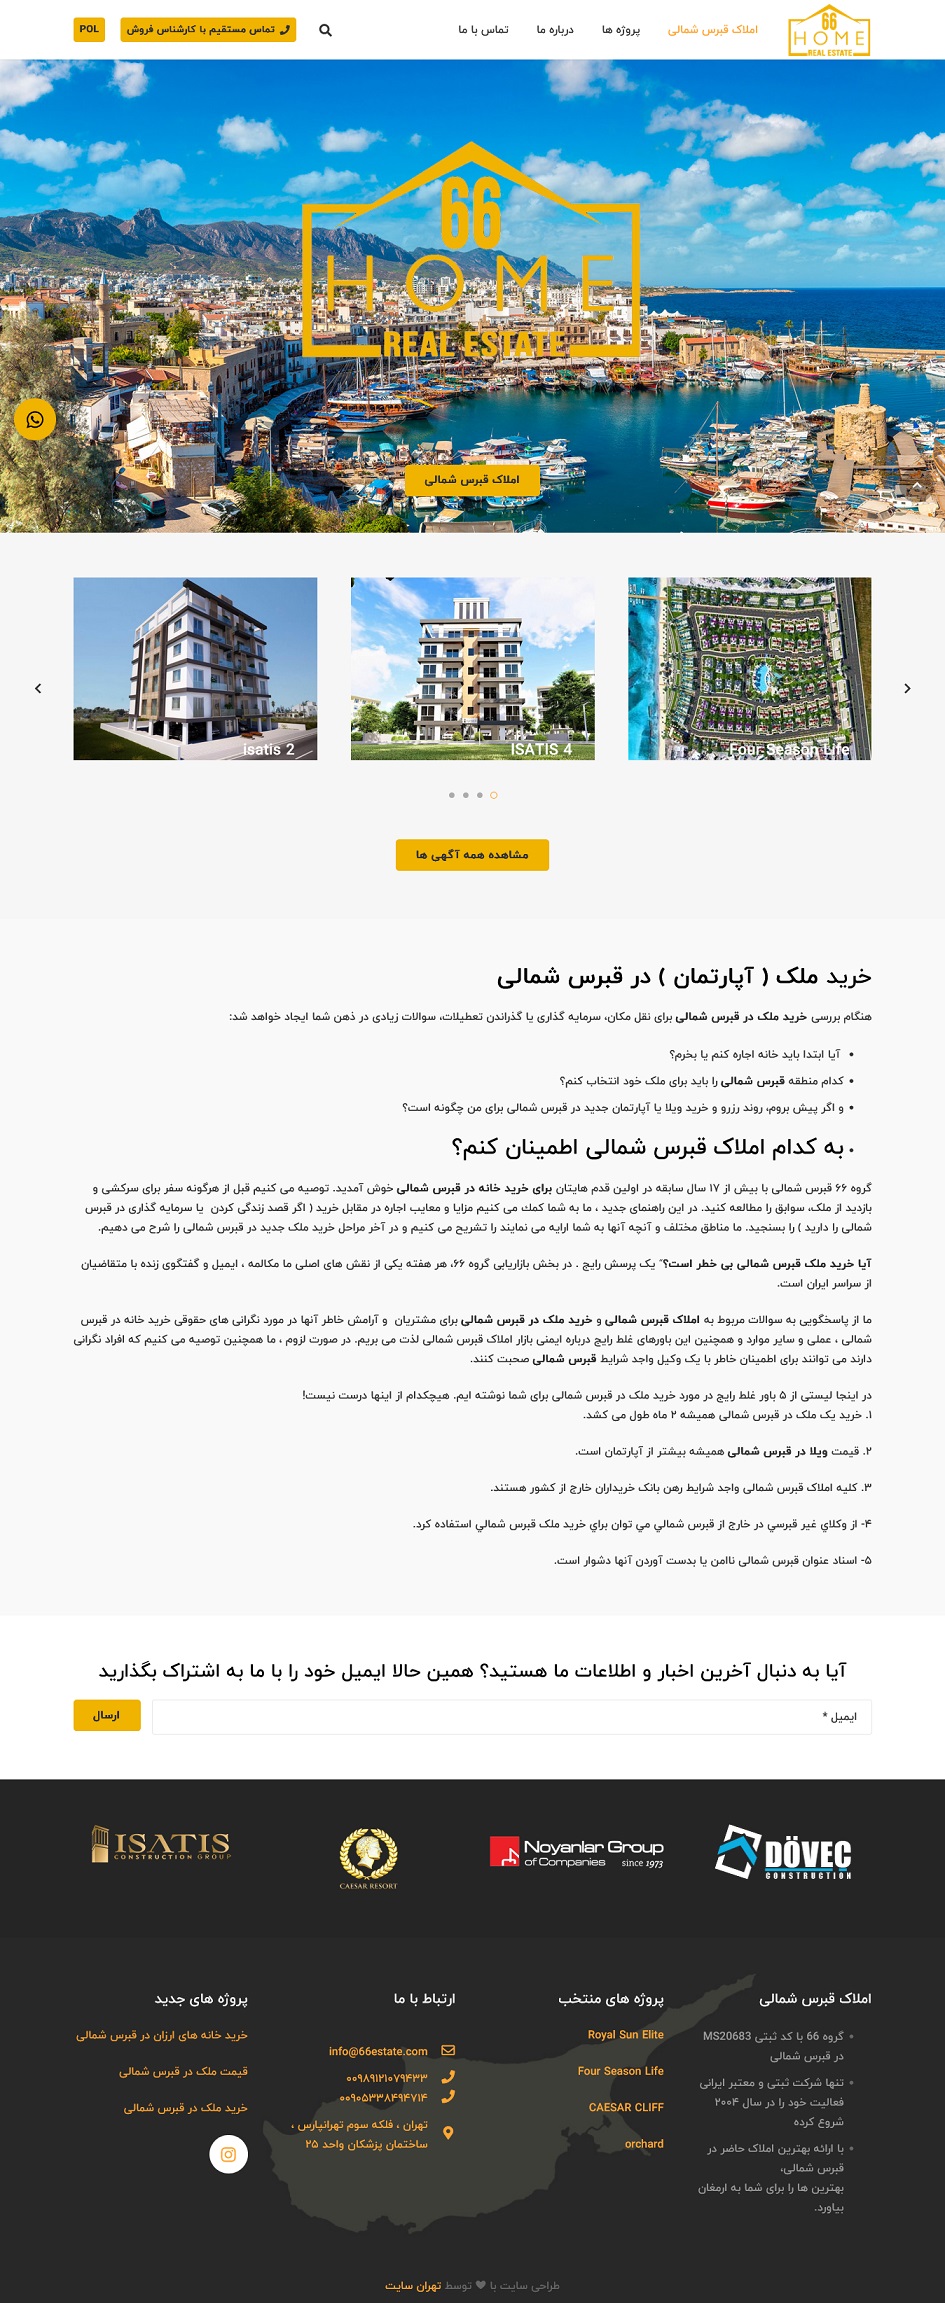 طراحی سایت بین المللی - طراحی سایت املاک - طراحی سایت ملکی - طراحی سایت قبرس